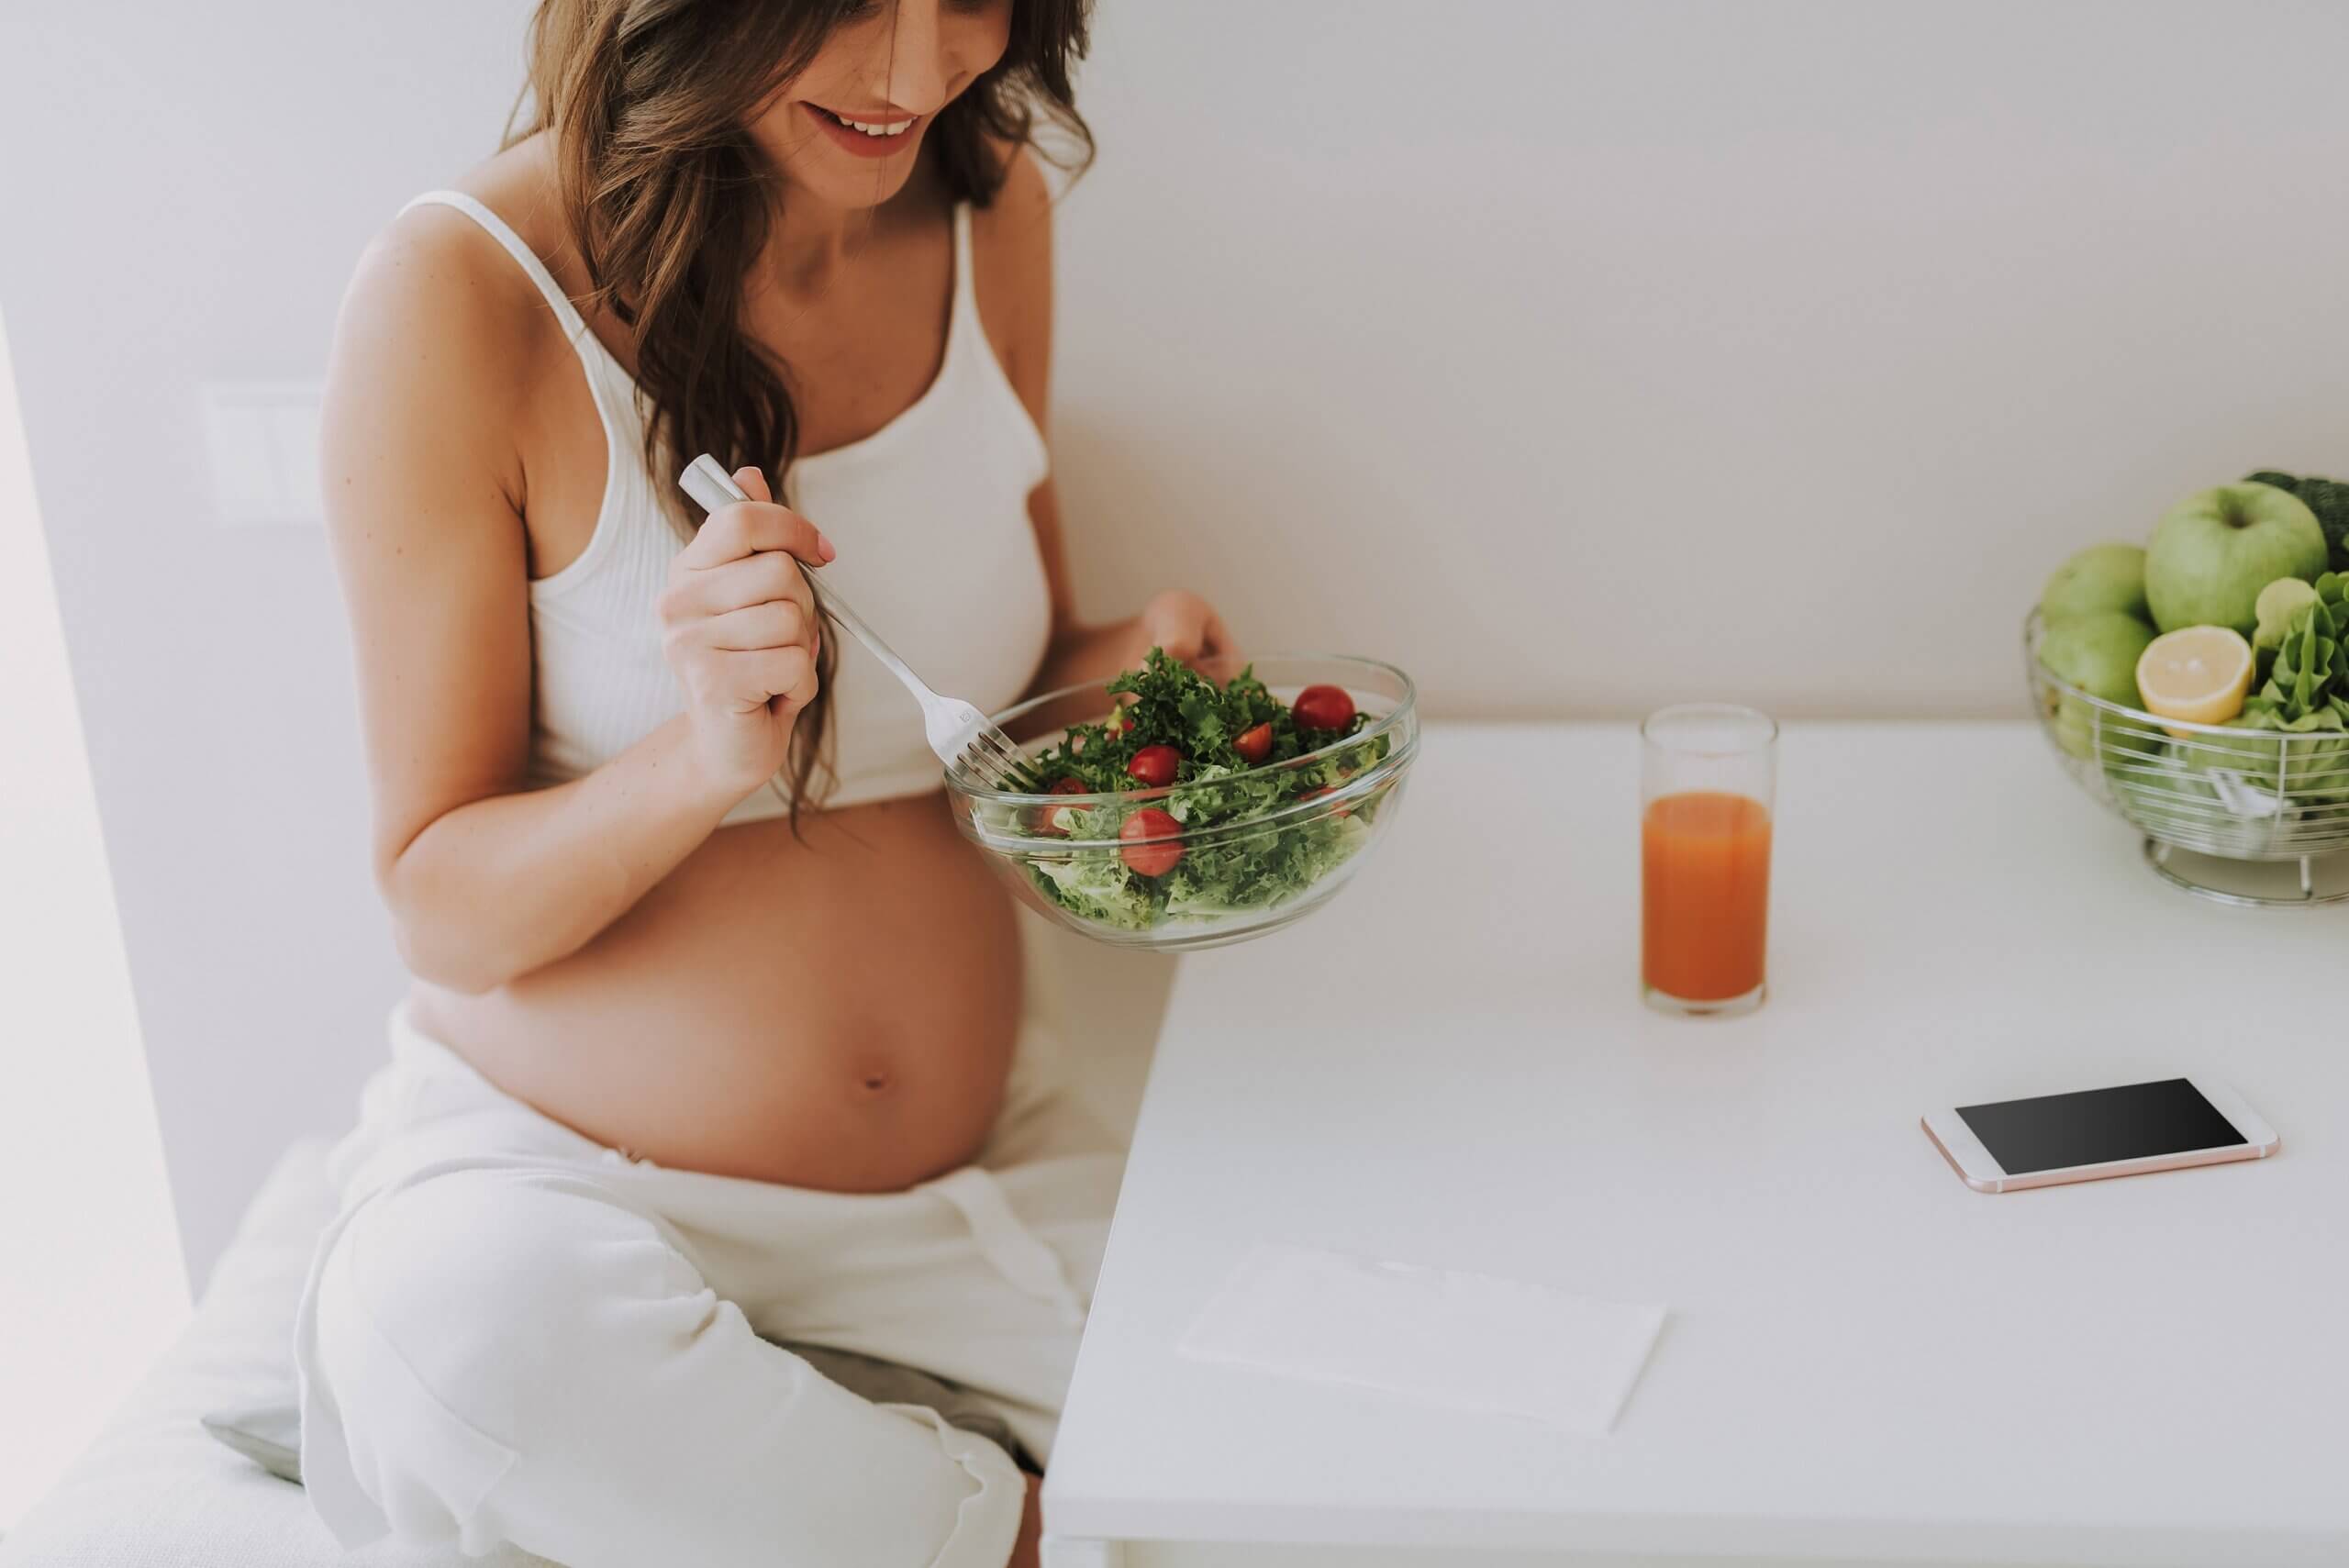 Une femme enceinte qui mange une salade.